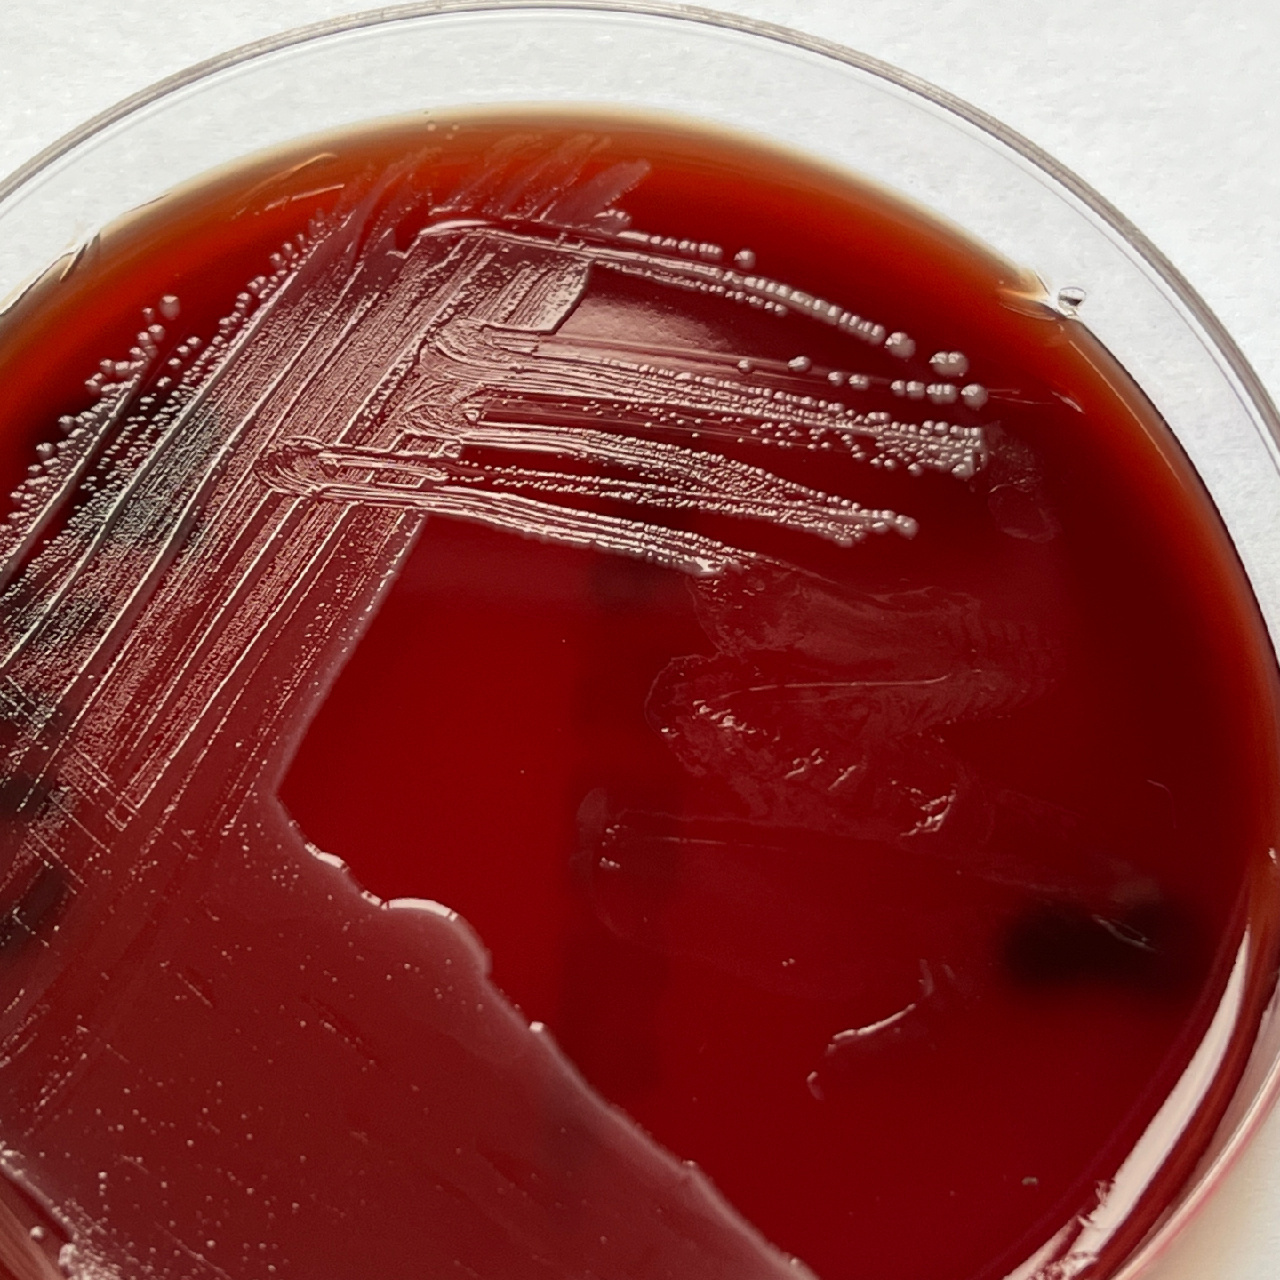 粪肠球菌镜检图片